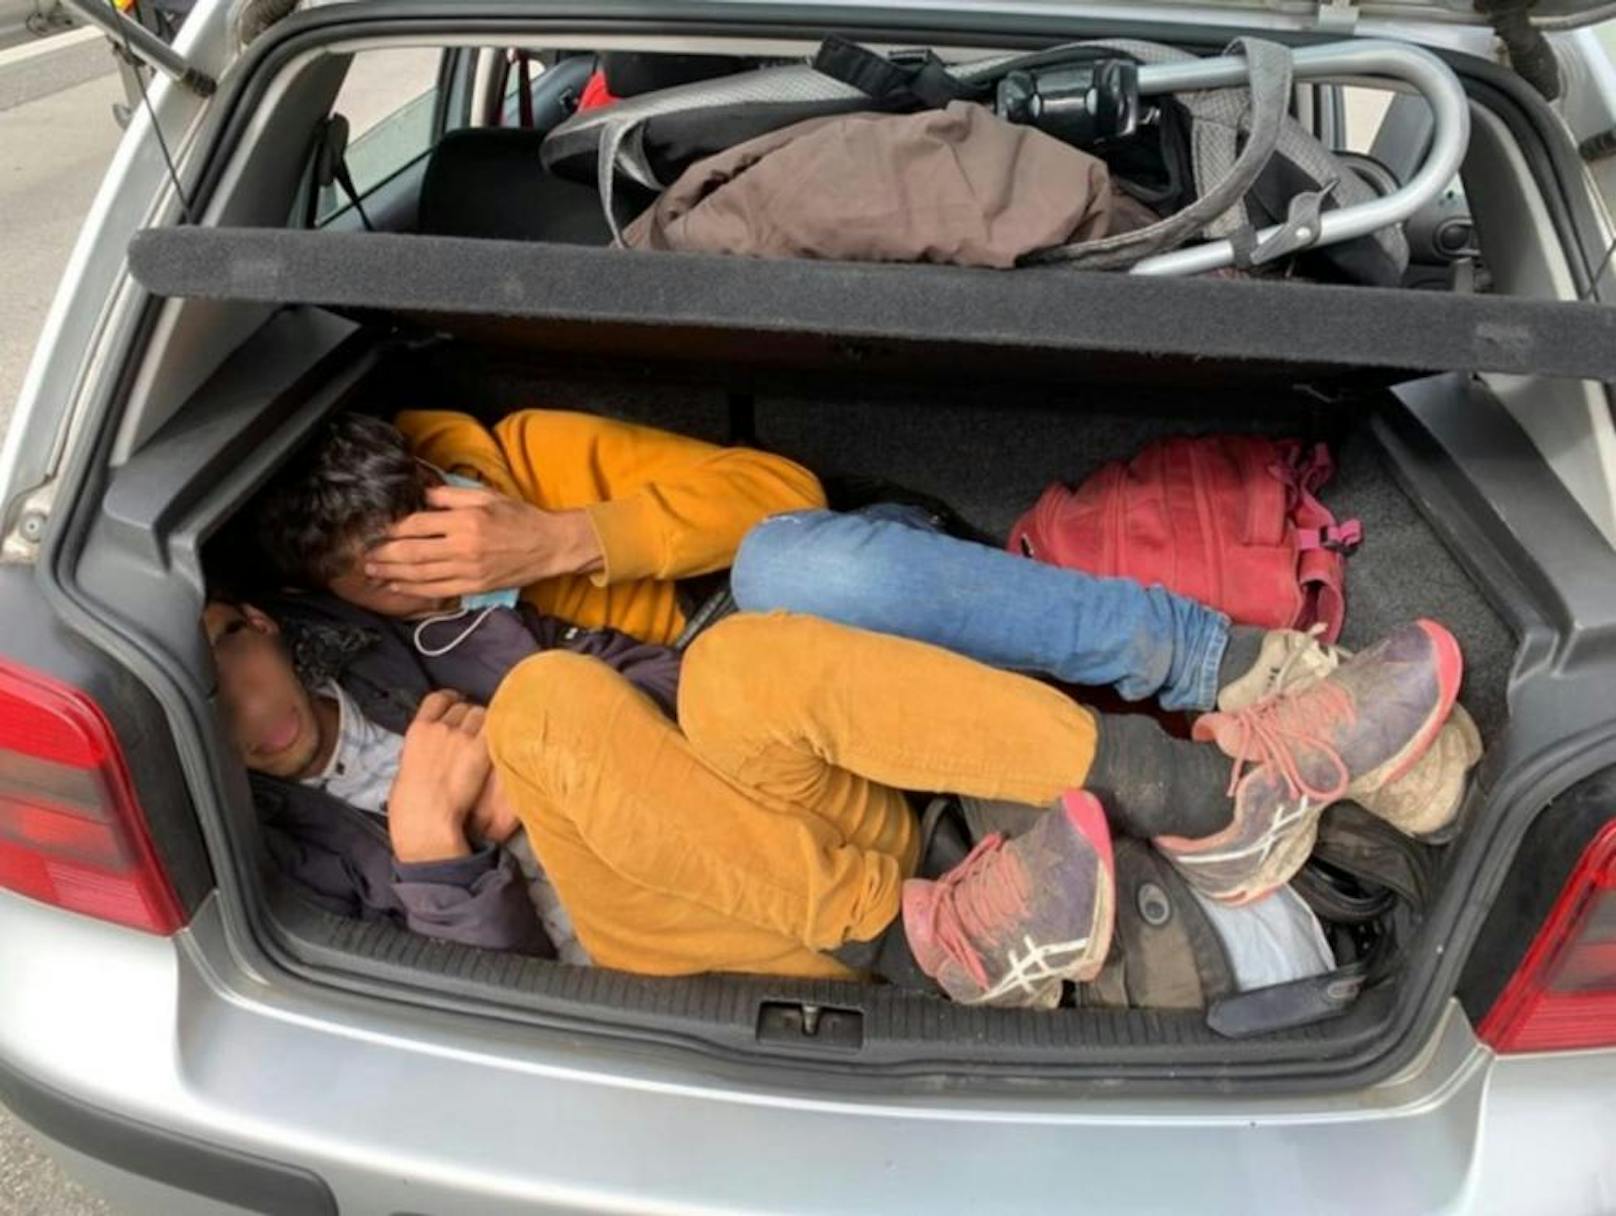 Zu elft im VW Golf, hier im Kofferraum versteckten sich zwei junge Afghanen